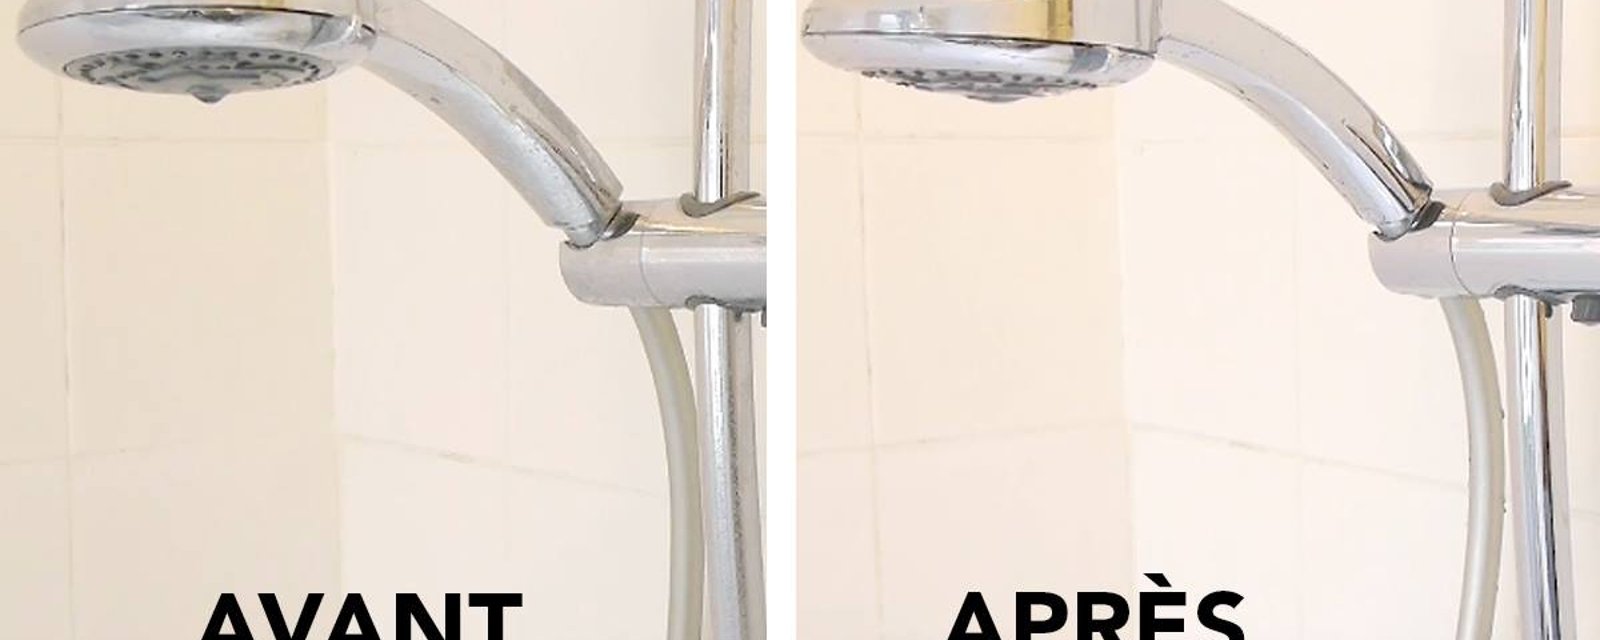 Une formule simple pour faire briller le chrome et les joints de carrelage de la salle de bain